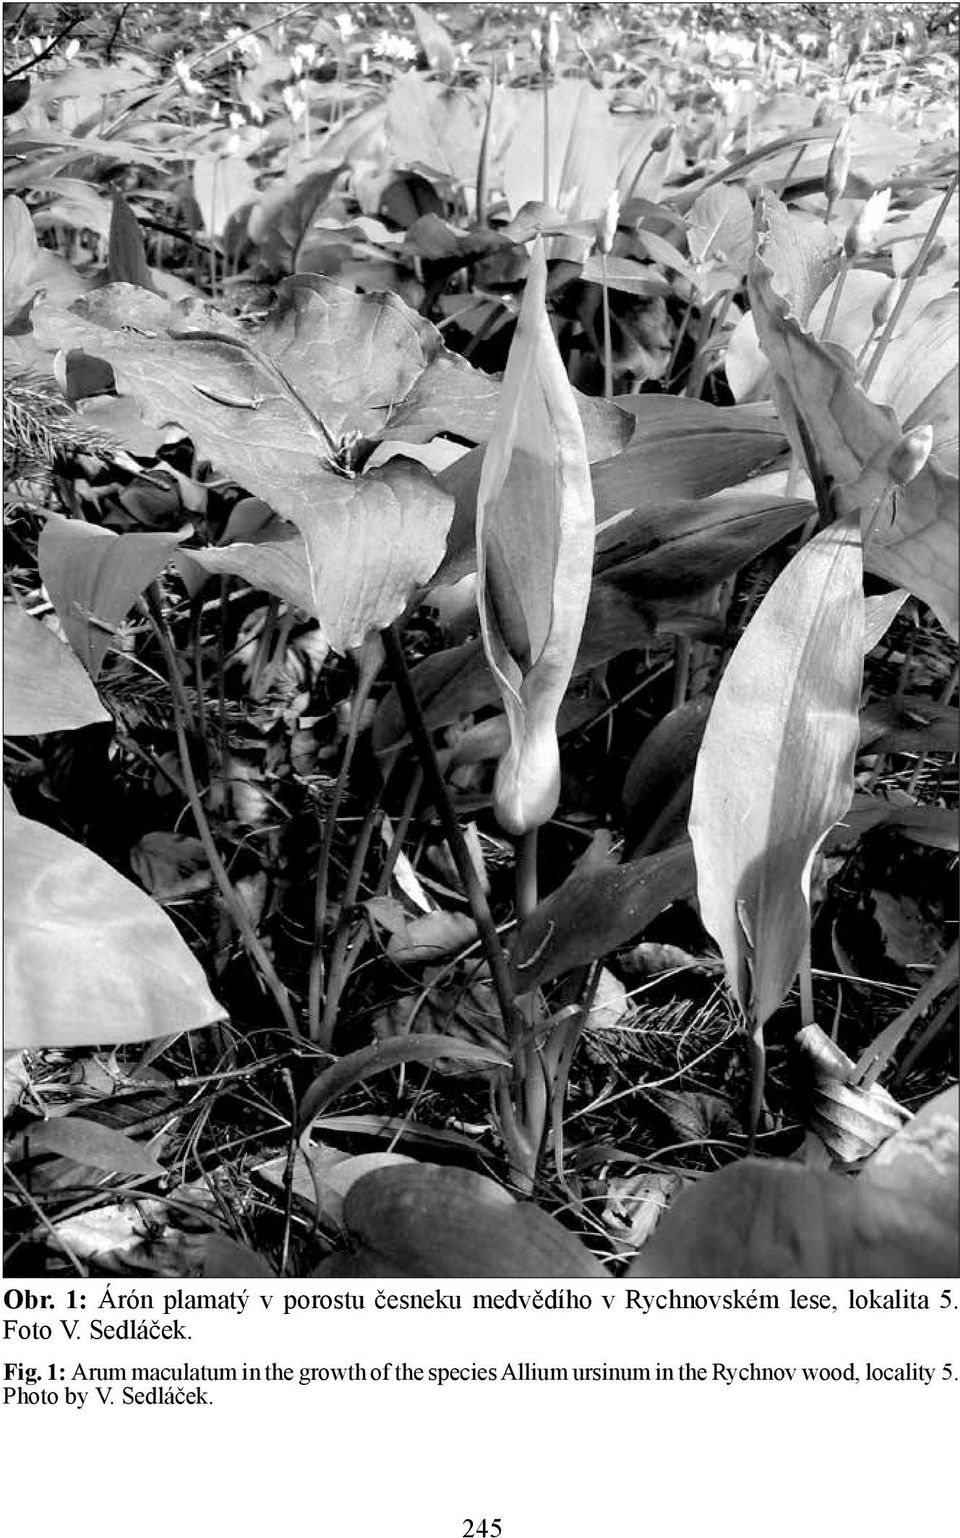 1: Arum maculatum in the growth of the species Allium